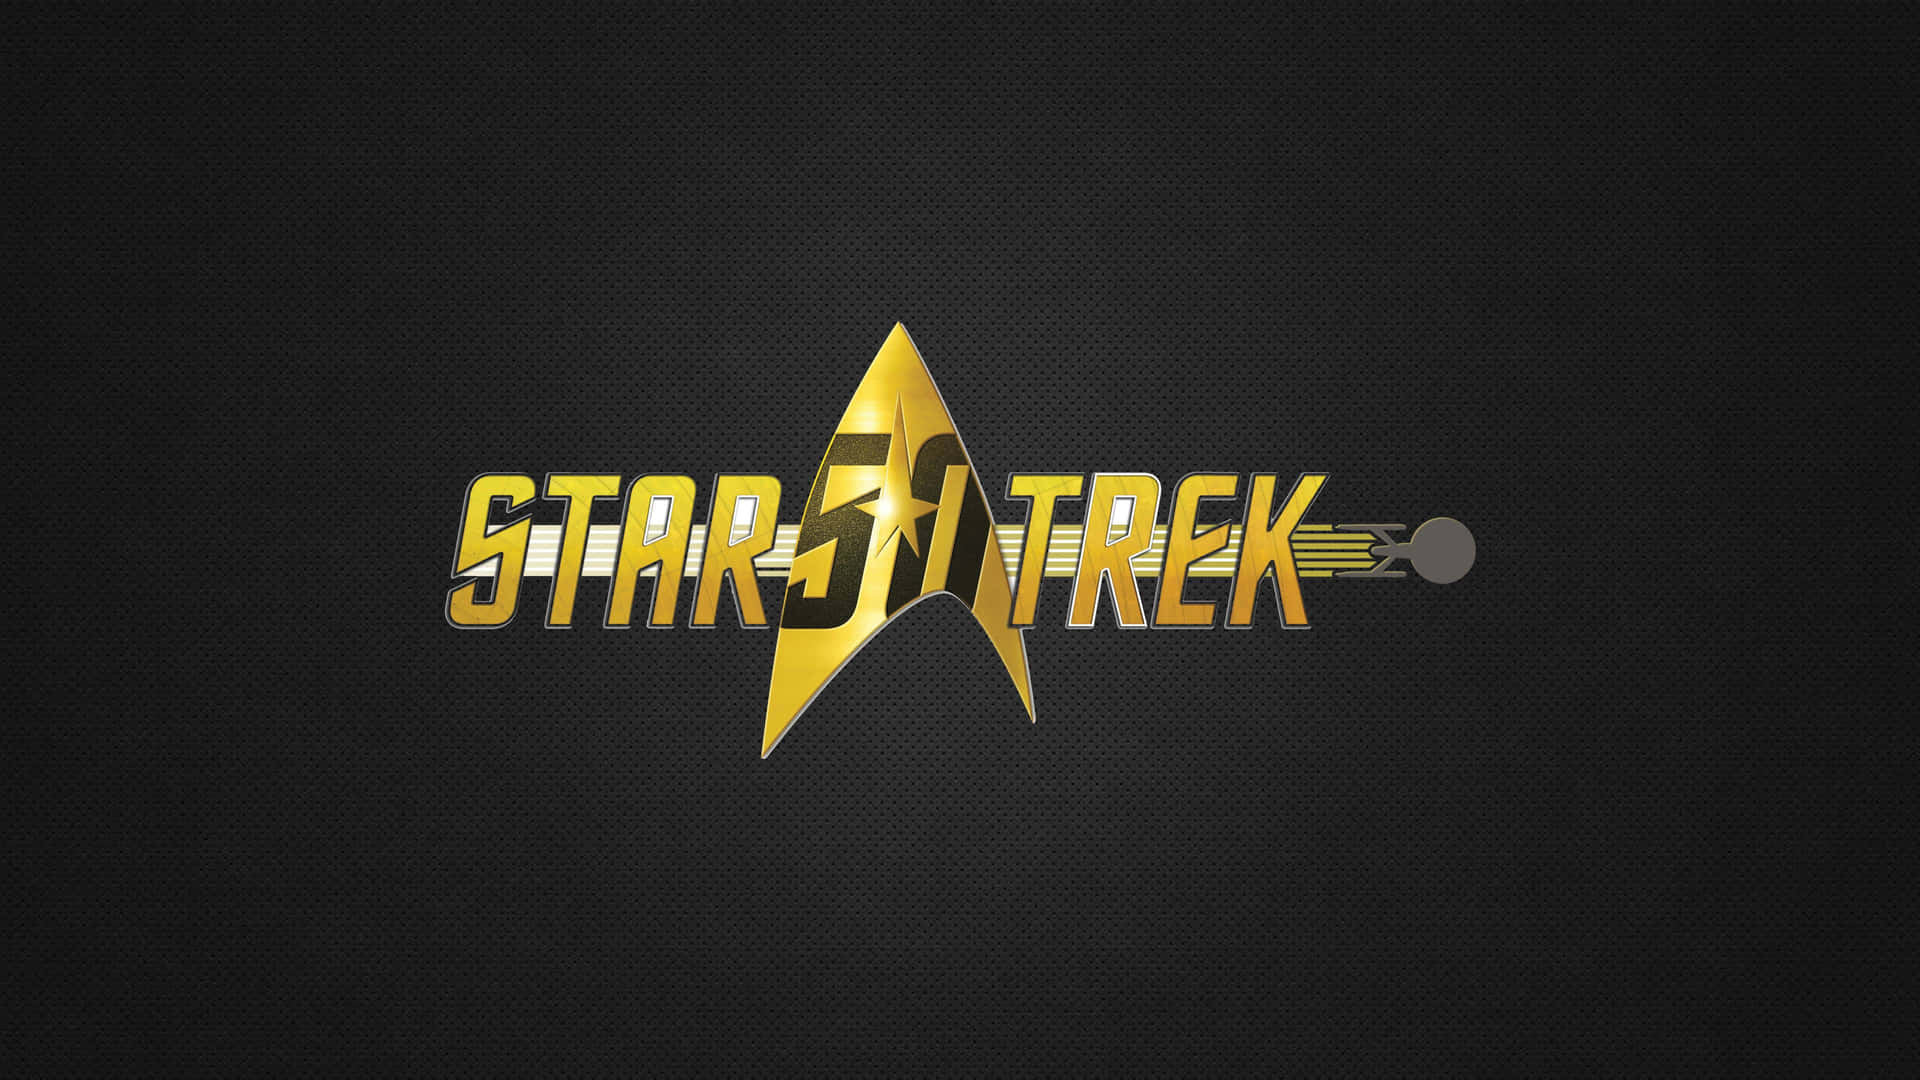 Star Trek Background Wallpaper